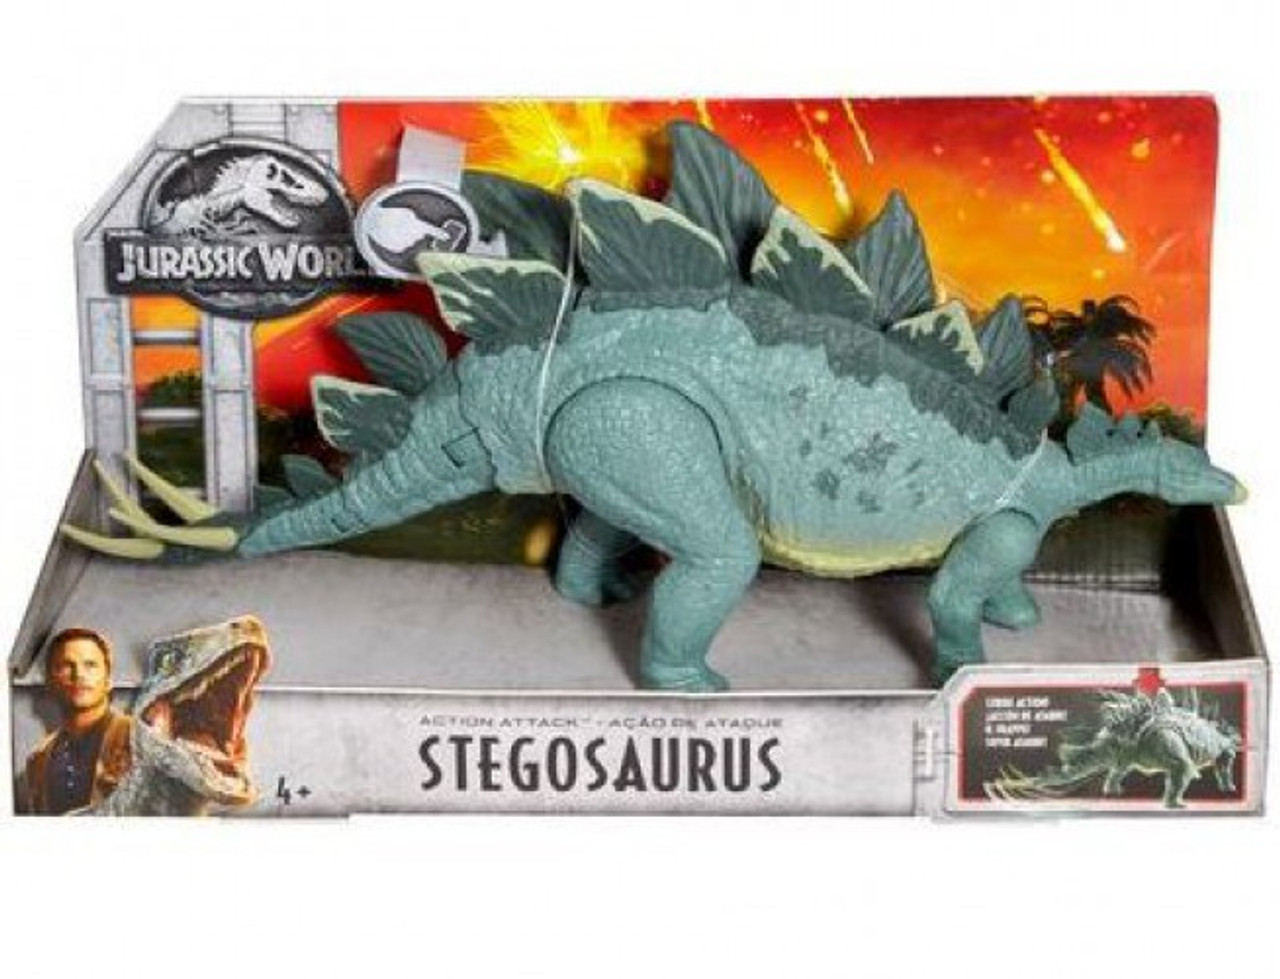 Мир динозавров игрушка. Стегозавр игрушка Jurassic World. Мир Юрского периода 2 игрушки Стегозавр. Динозавры игрушки парк Юрского периода 2. Игрушки динозавры мир Юрского периода 2.